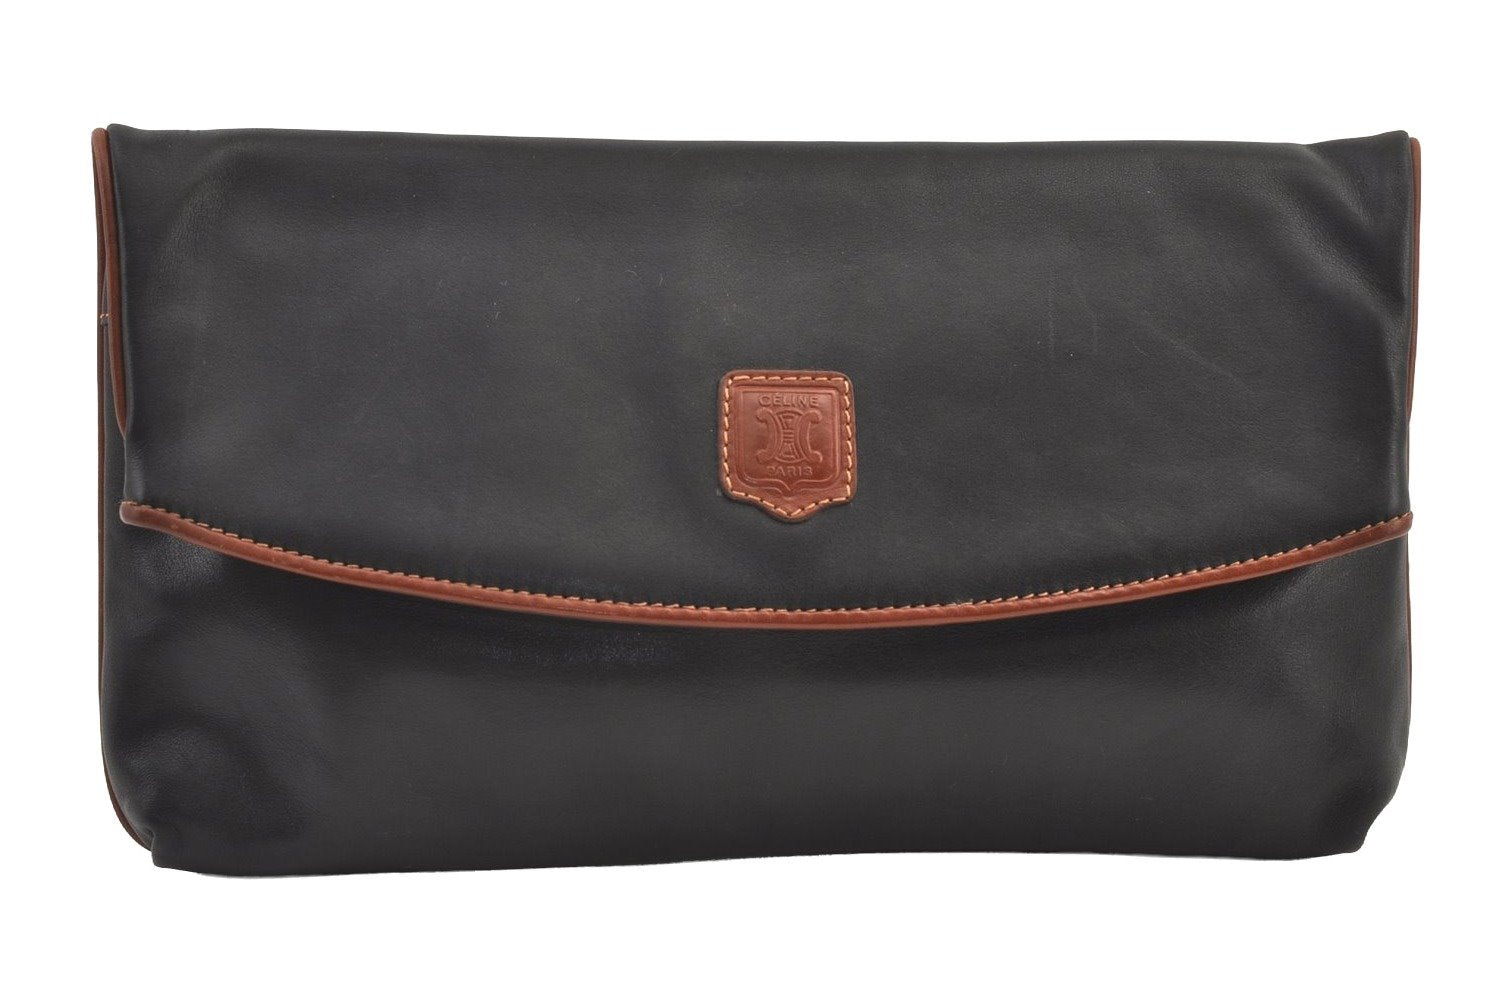 Authentic CELINE Vintage Clutch Hand Bag Purse Leather Black 9215J